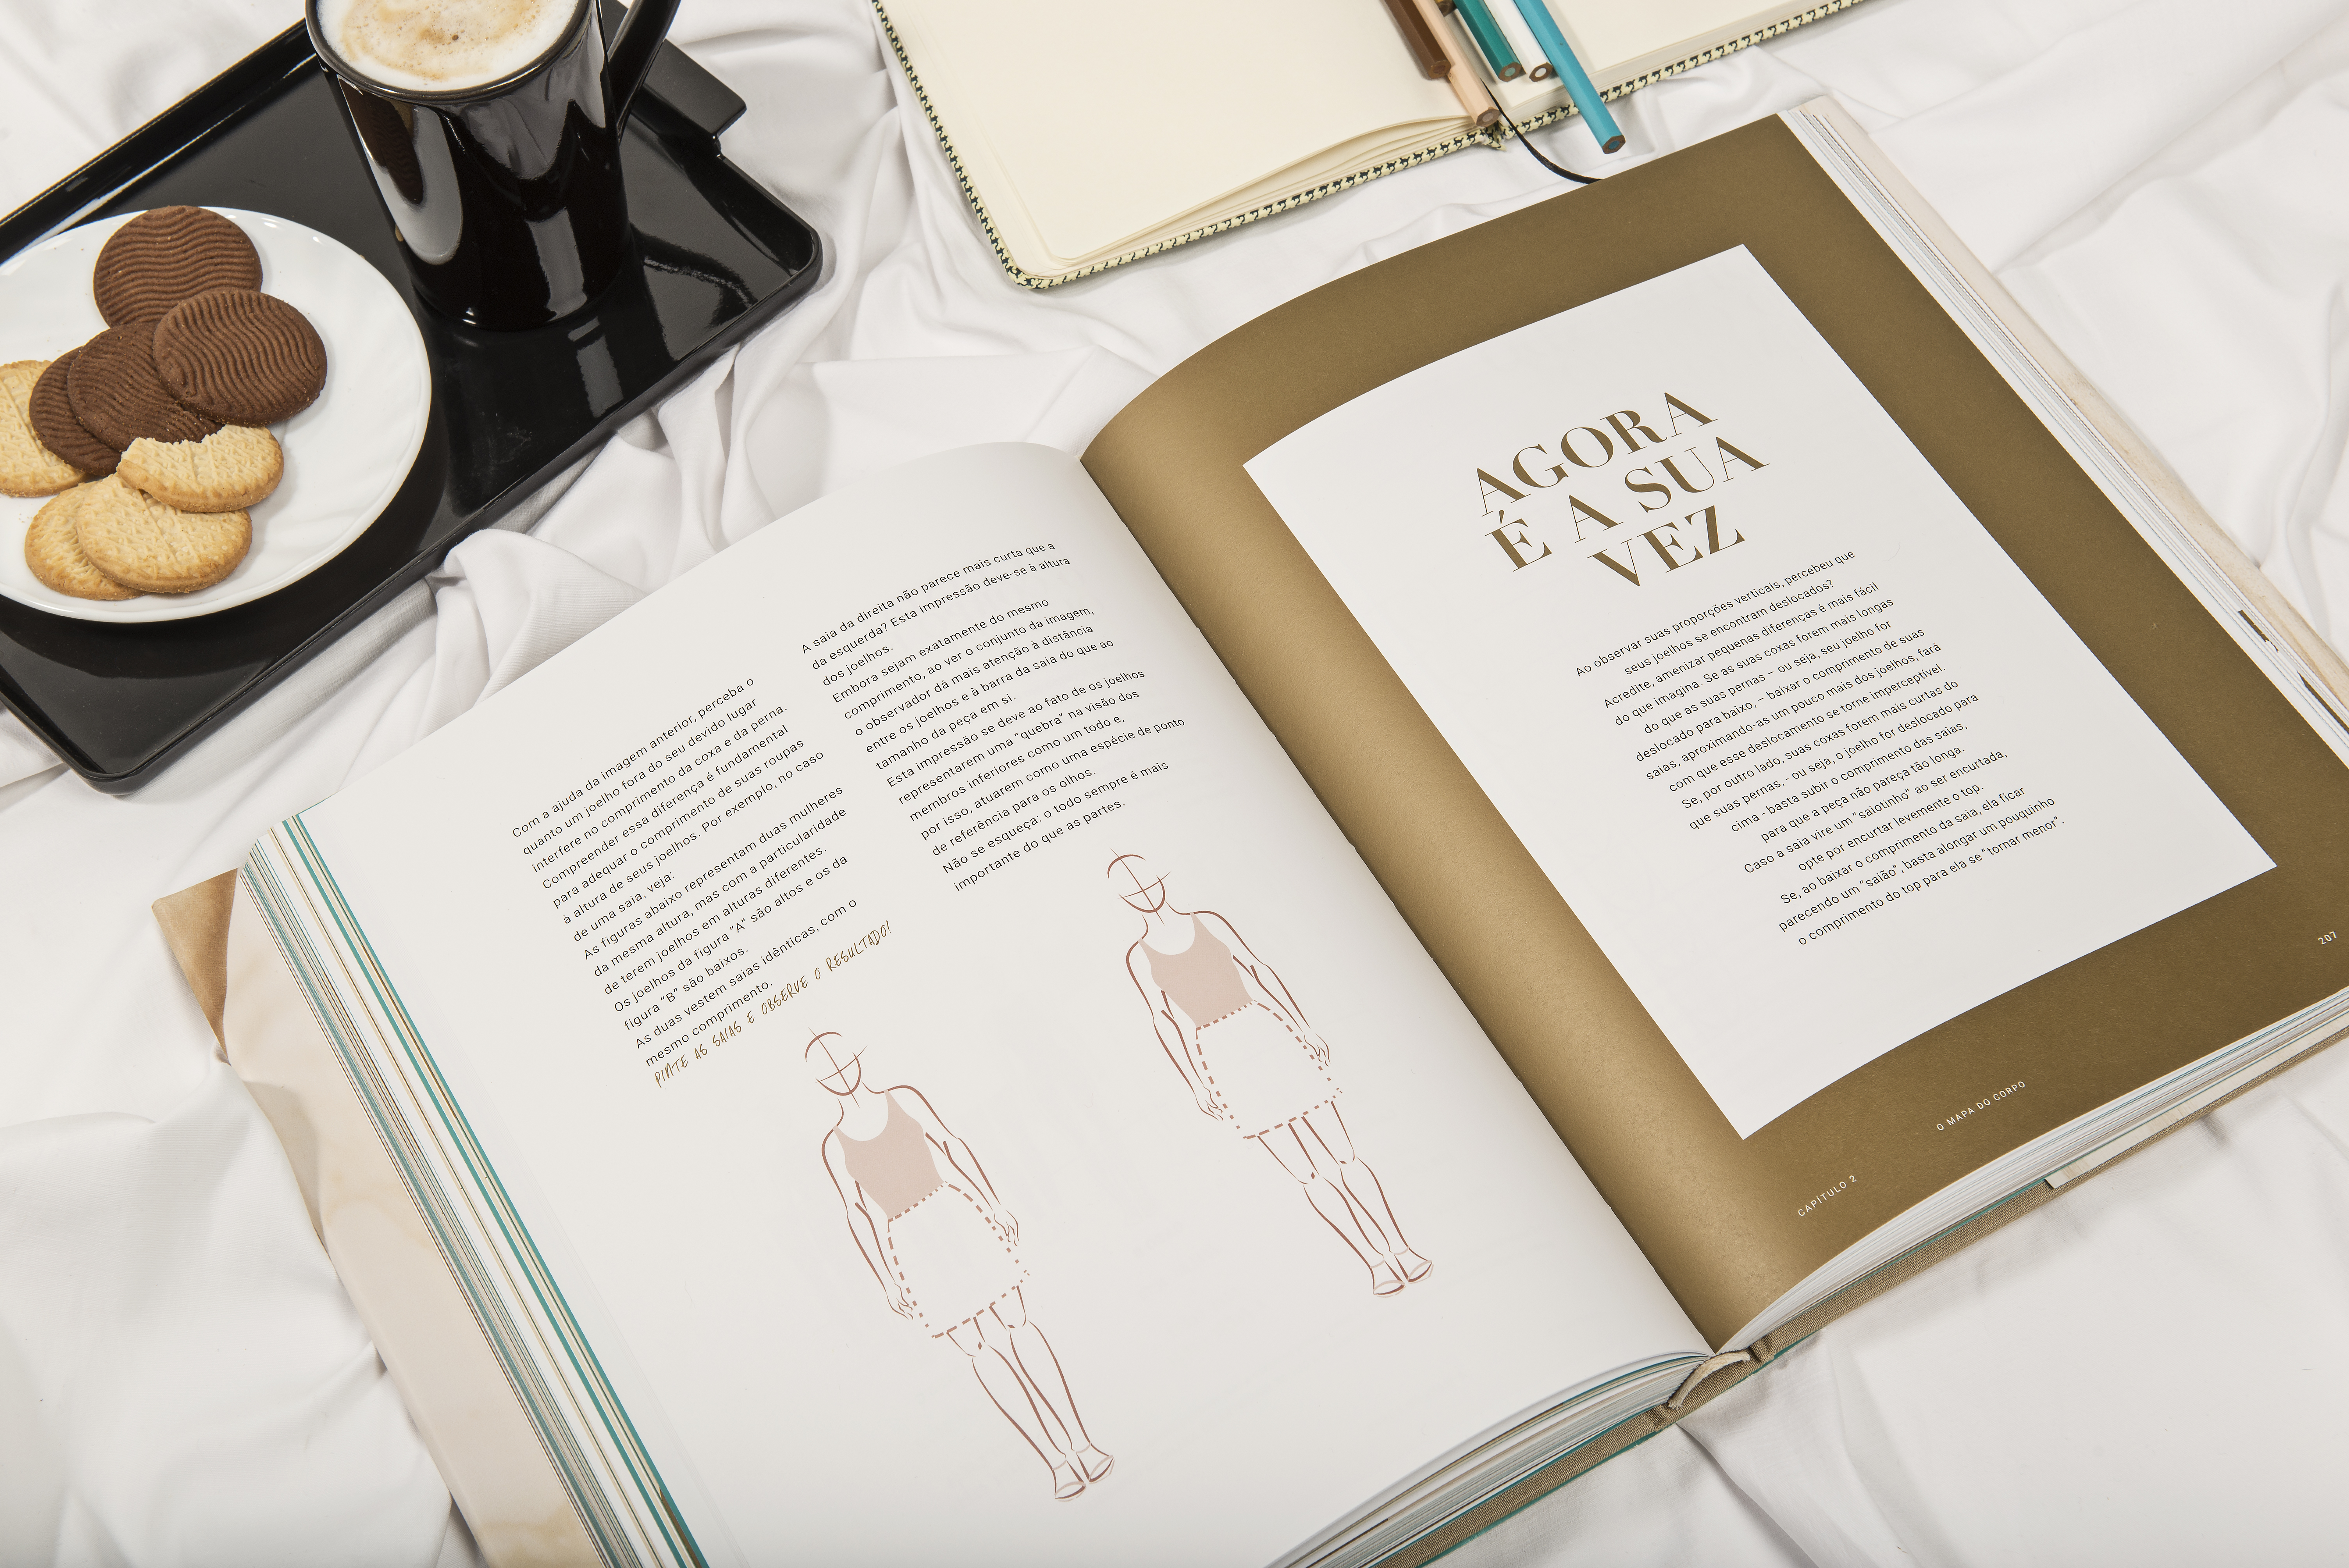  Escritora especialista em anatomia da imagem lança livro no Museu Oscar Niemeyer